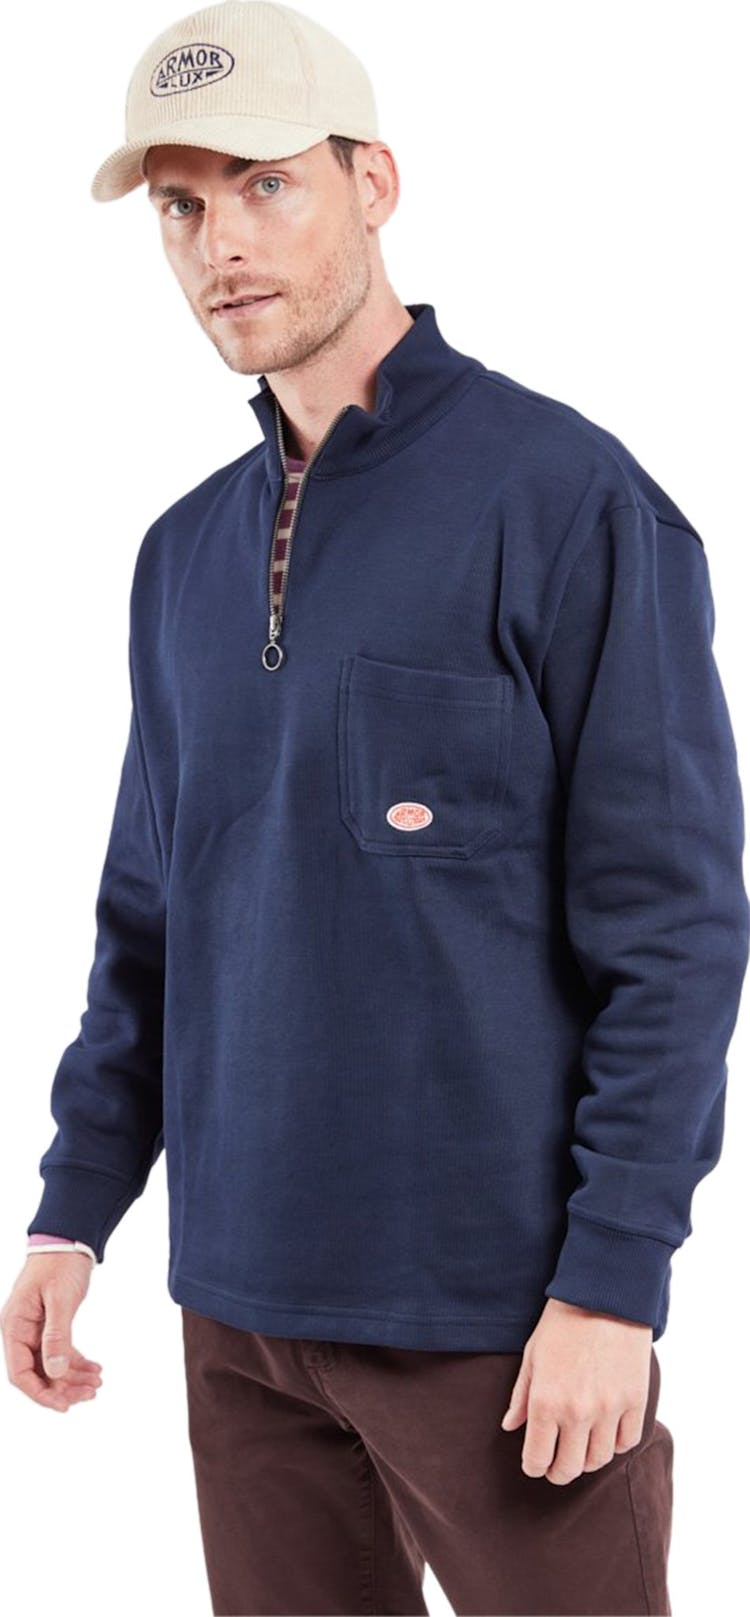 Product gallery image number 2 for product Heritage Zip-Neck Sweatshirt - Men's